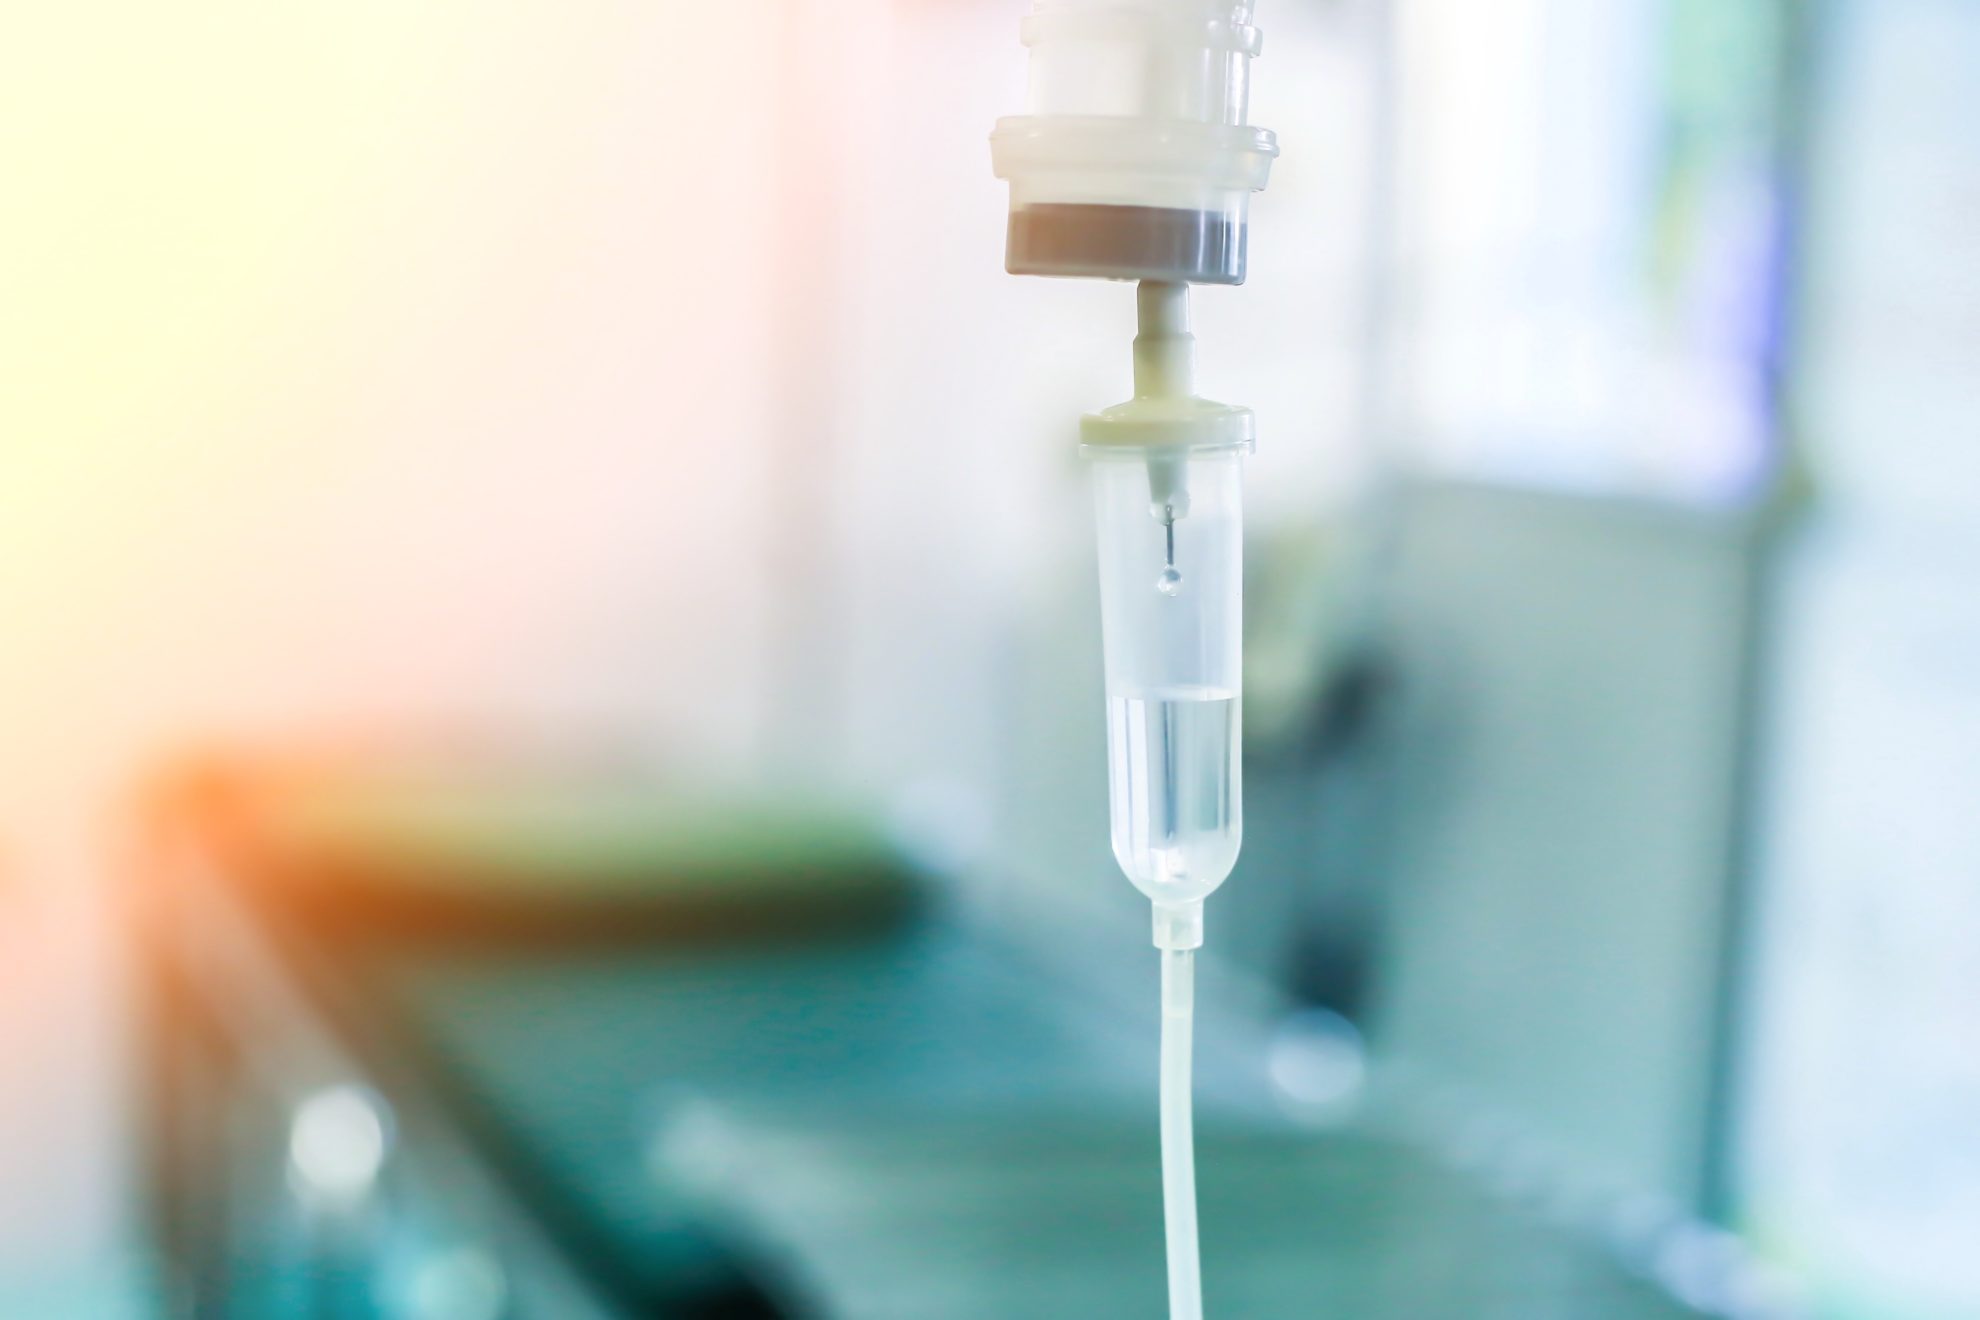 Lietuvoje patvirtintas vienuoliktas mirties nuo koronaviruso atvejis, šeštadienio vakarą pranešė Sveikatos apsaugos ministerija.